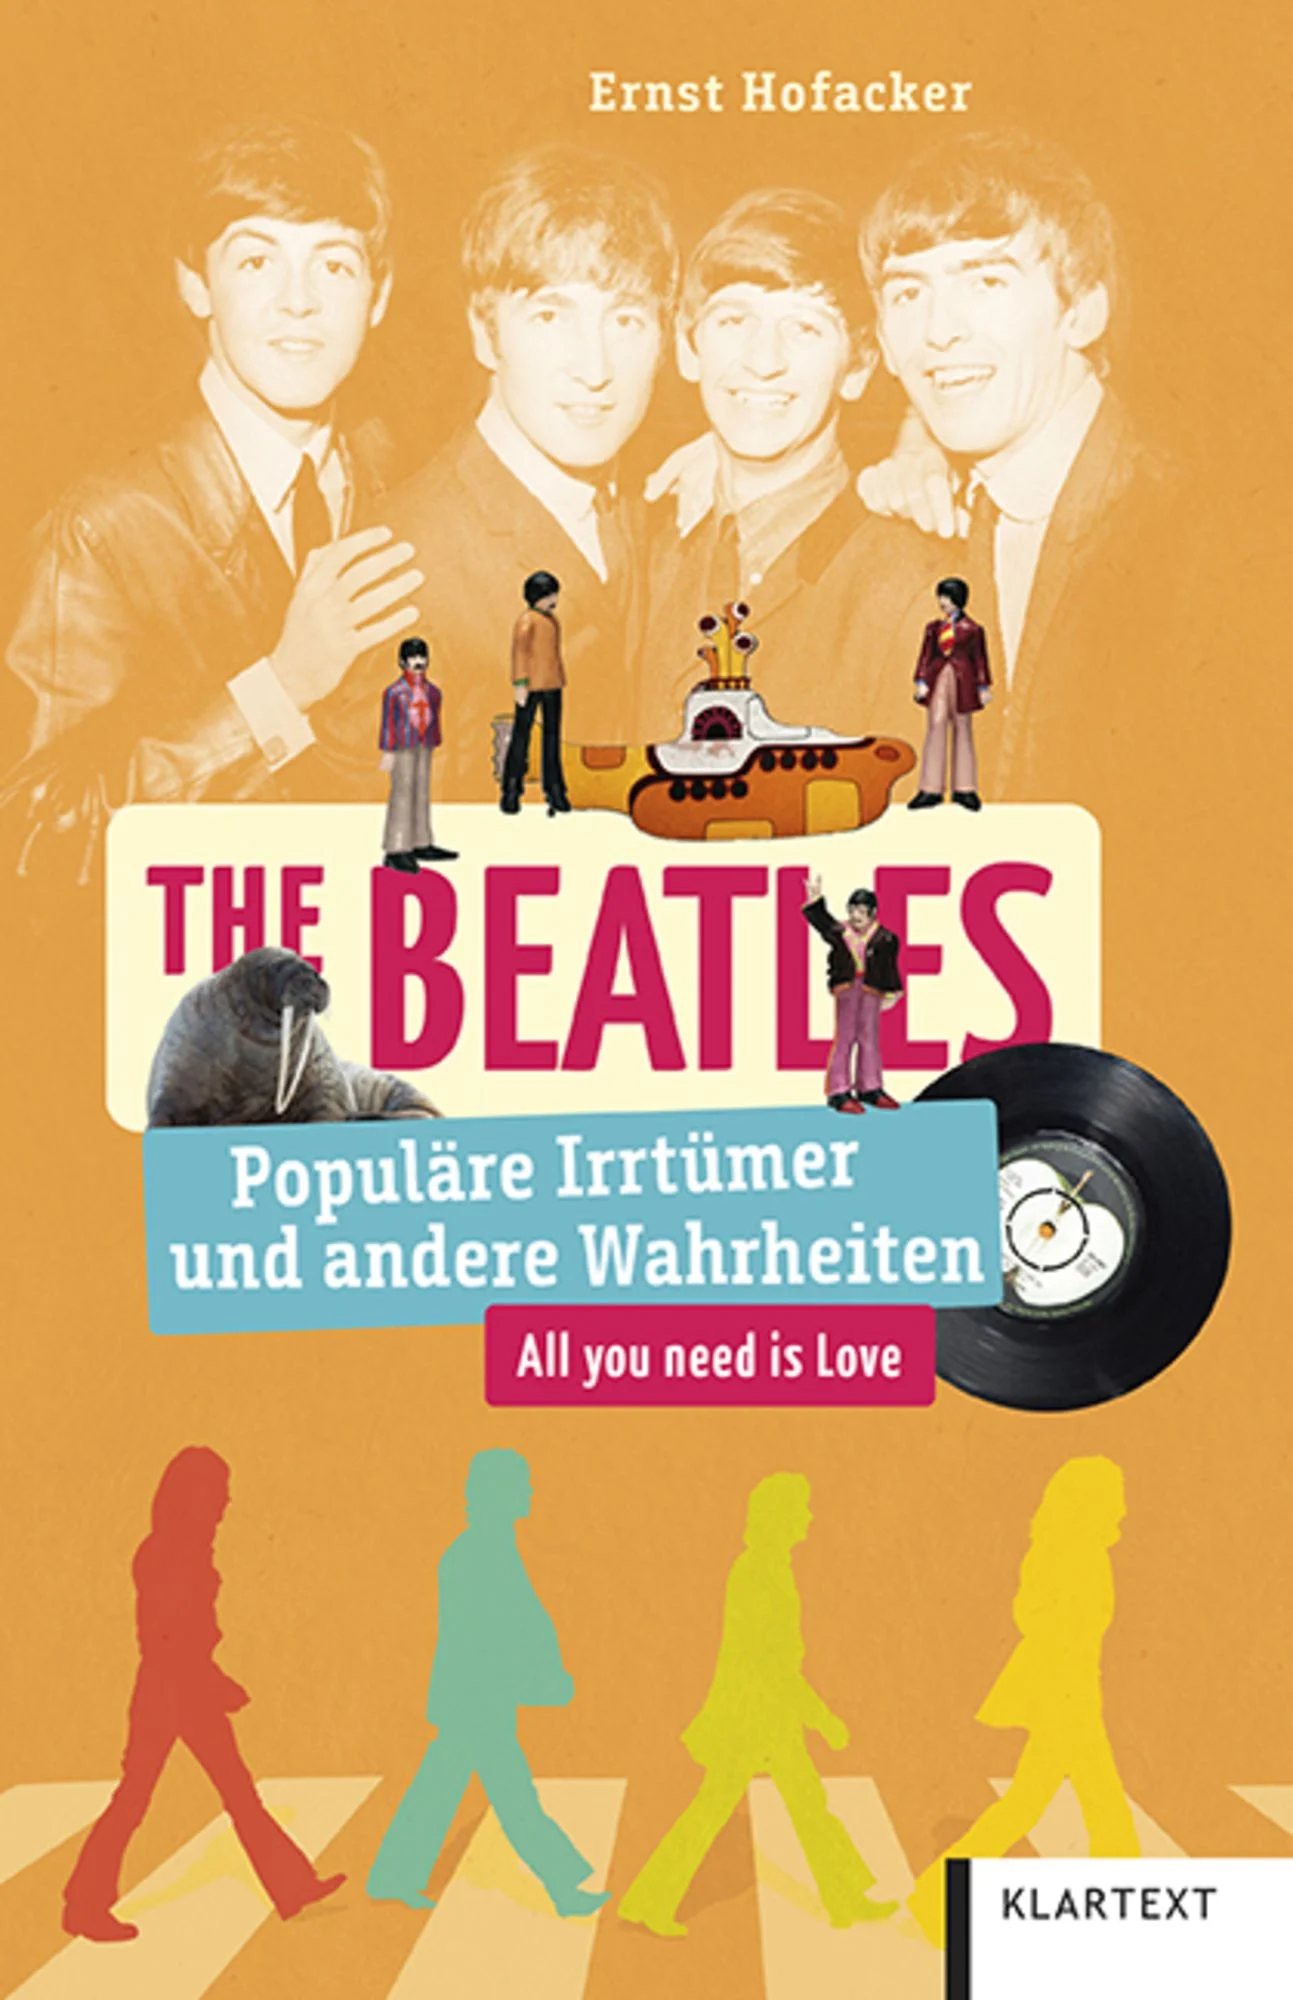 The Beatles - Populäre Irrtümer und andere Wahrheiten